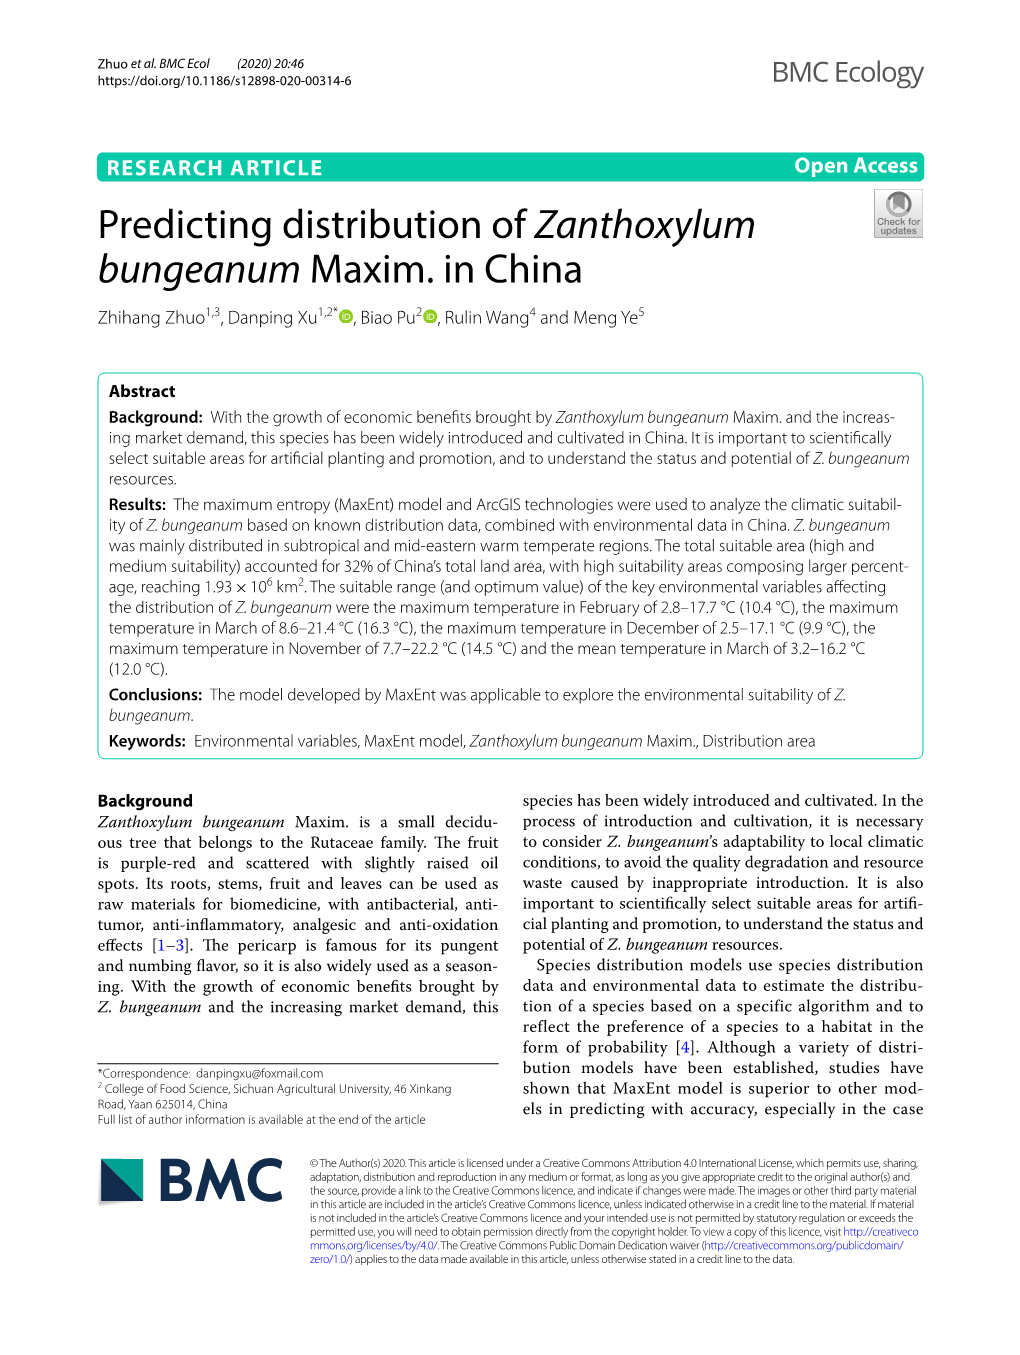 Predicting Distribution of Zanthoxylum Bungeanum Maxim. in China Zhihang Zhuo1,3, Danping Xu1,2* , Biao Pu2 , Rulin Wang4 and Meng Ye5